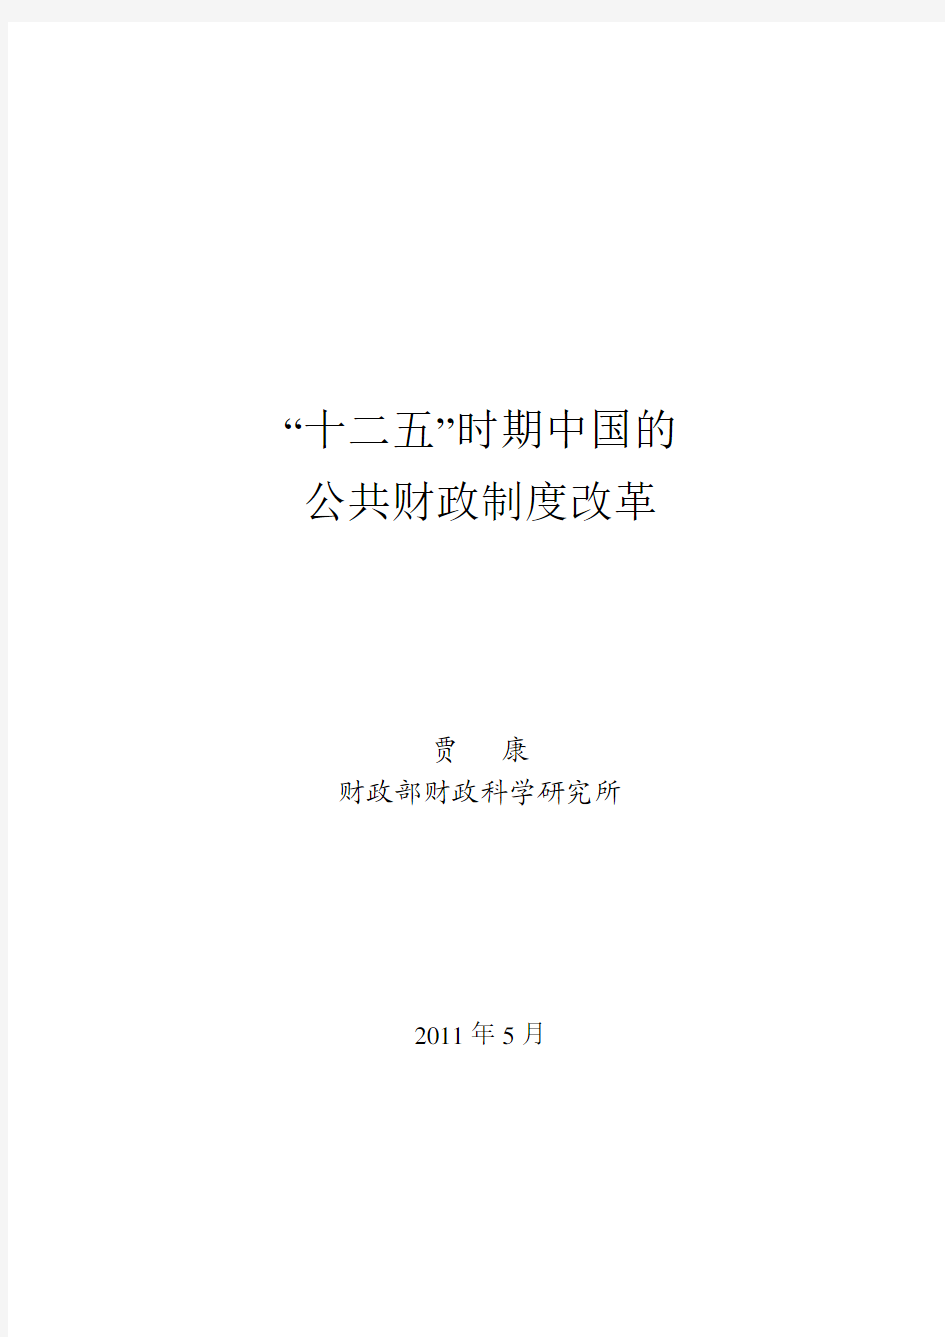 基金会报告103期：“十二五”时期中国的公共财政制度改革